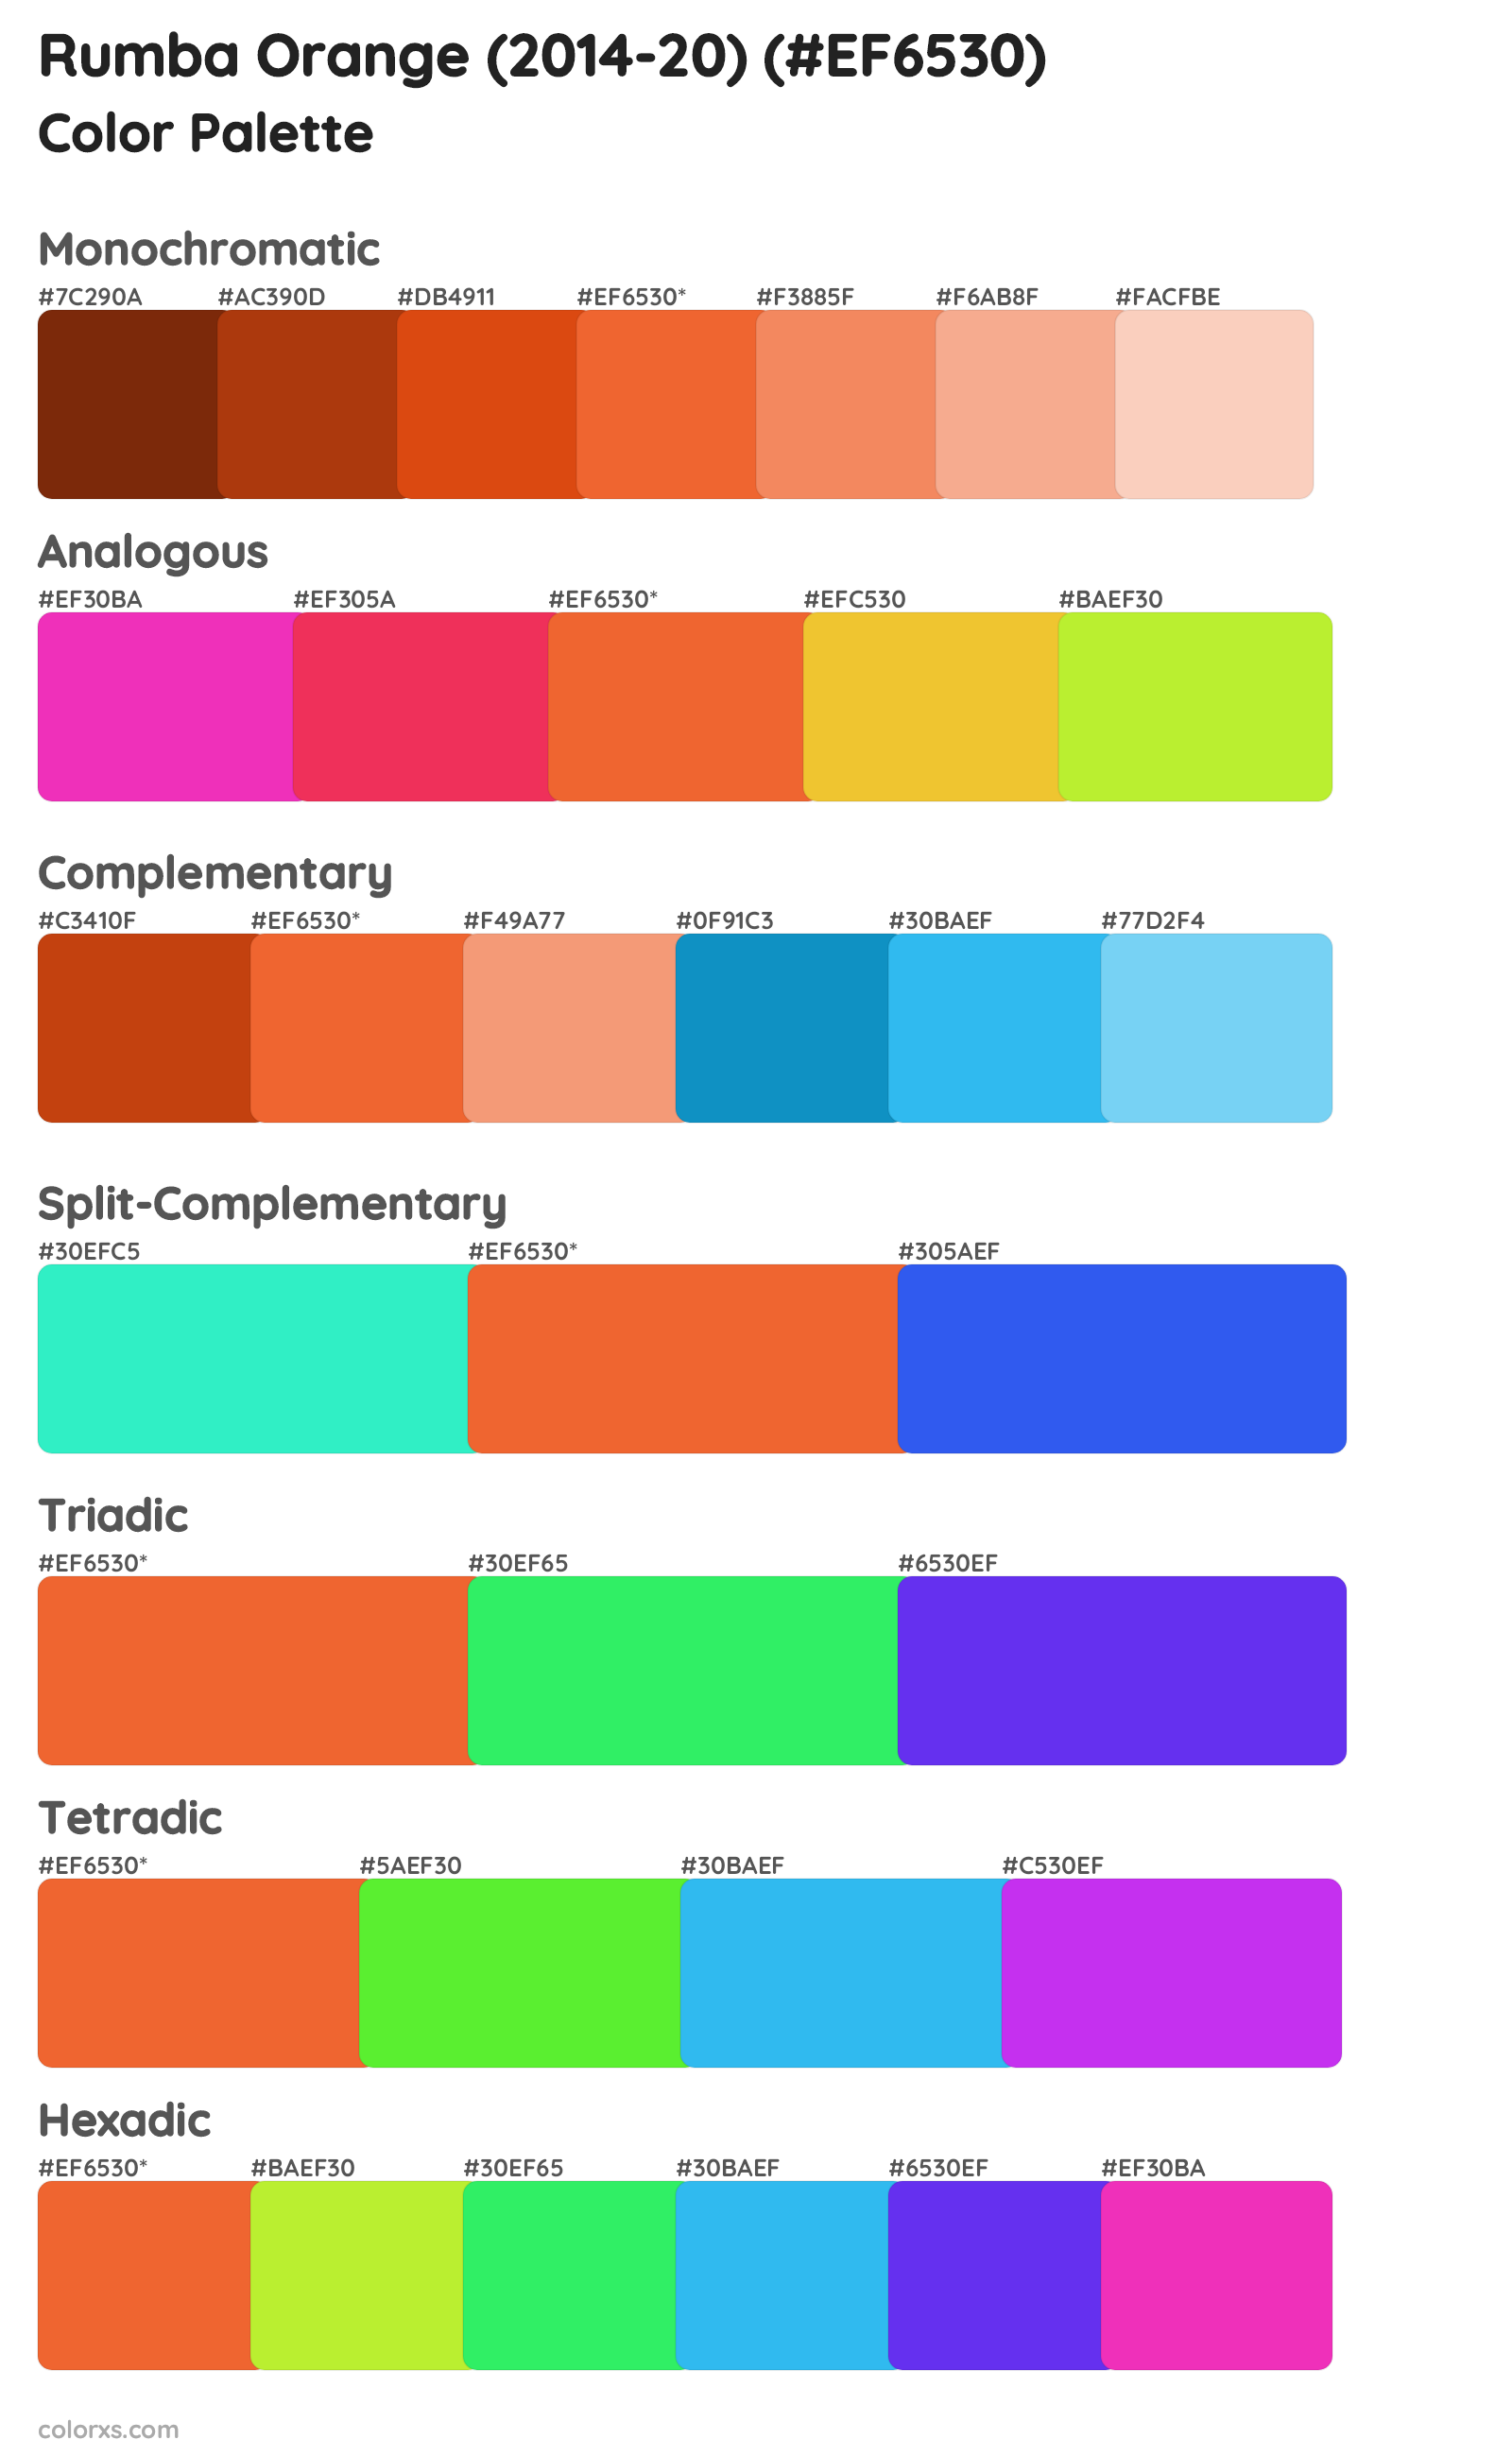 Rumba Orange (2014-20) Color Scheme Palettes